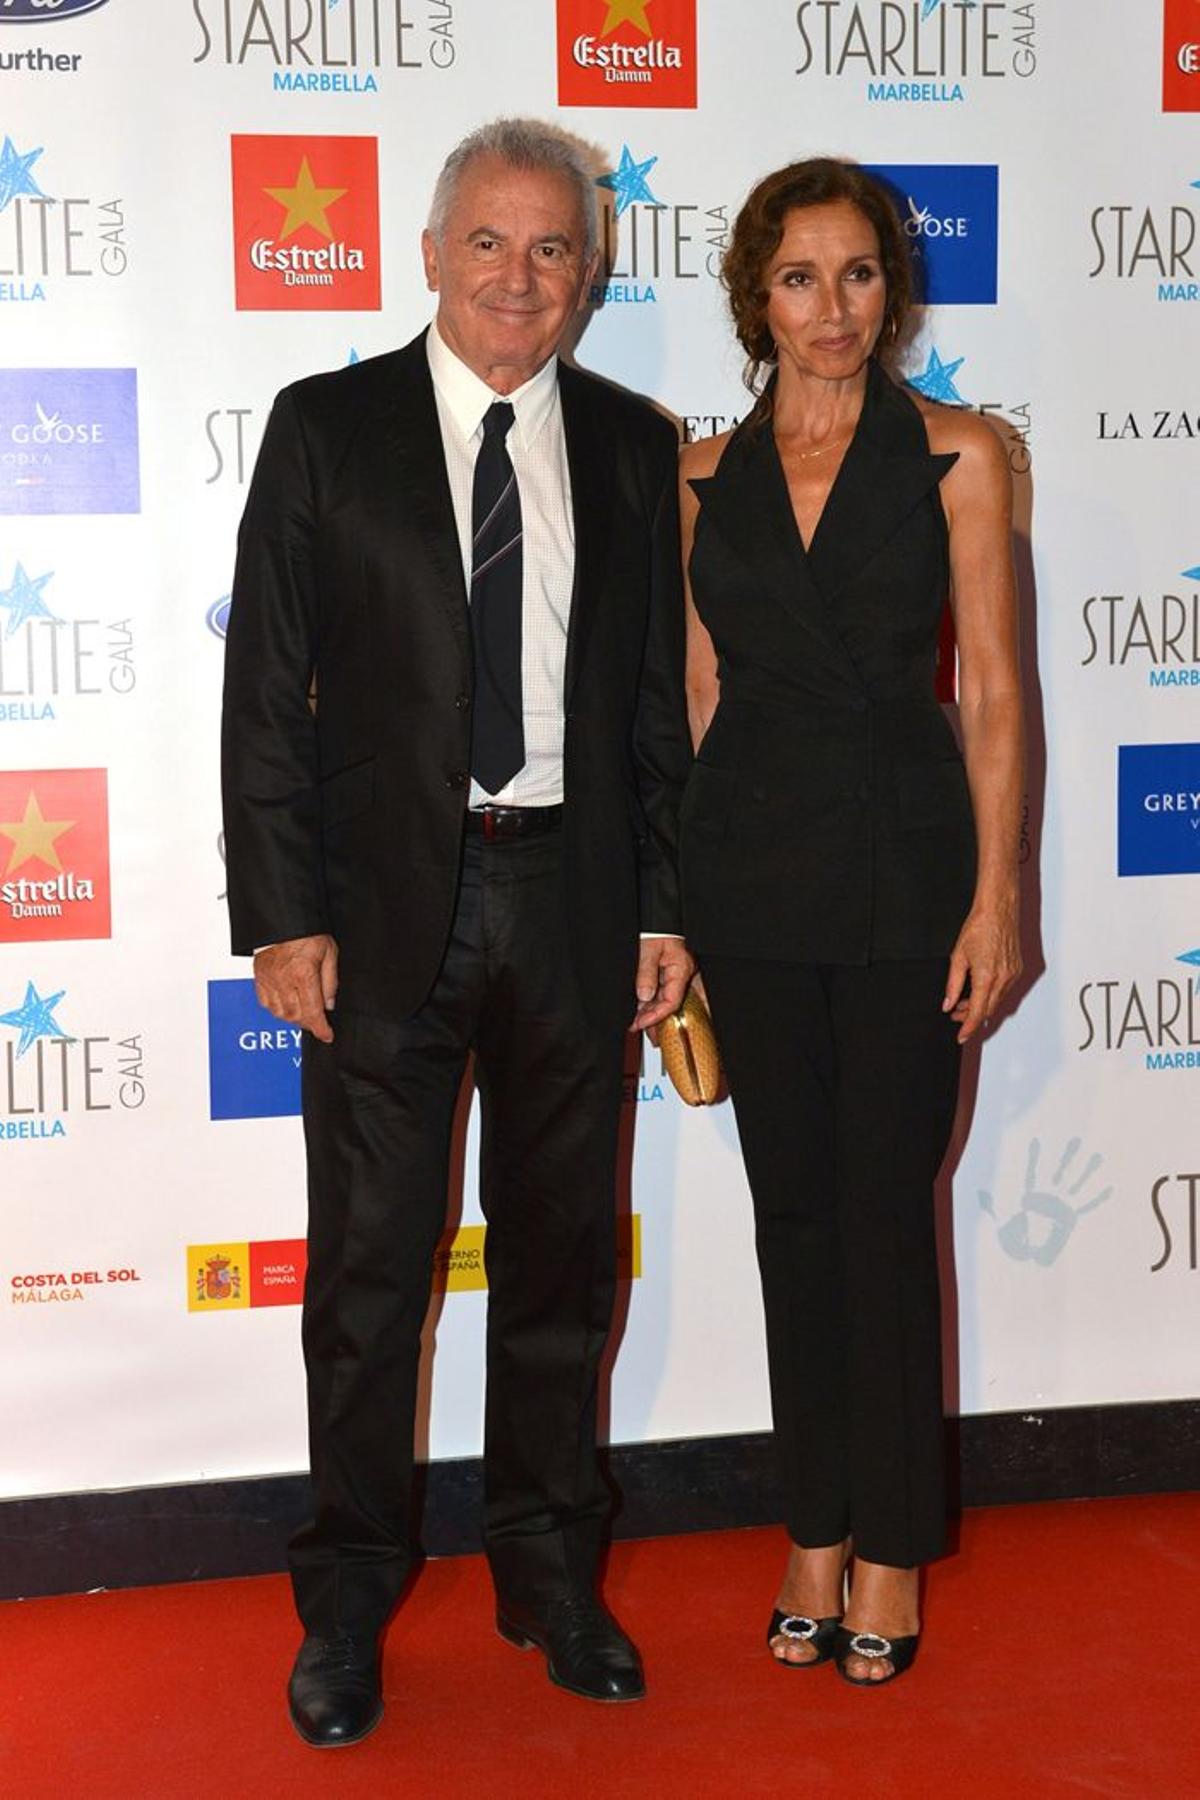 Victor Manuel y Ana Belén en Starlite Marbella